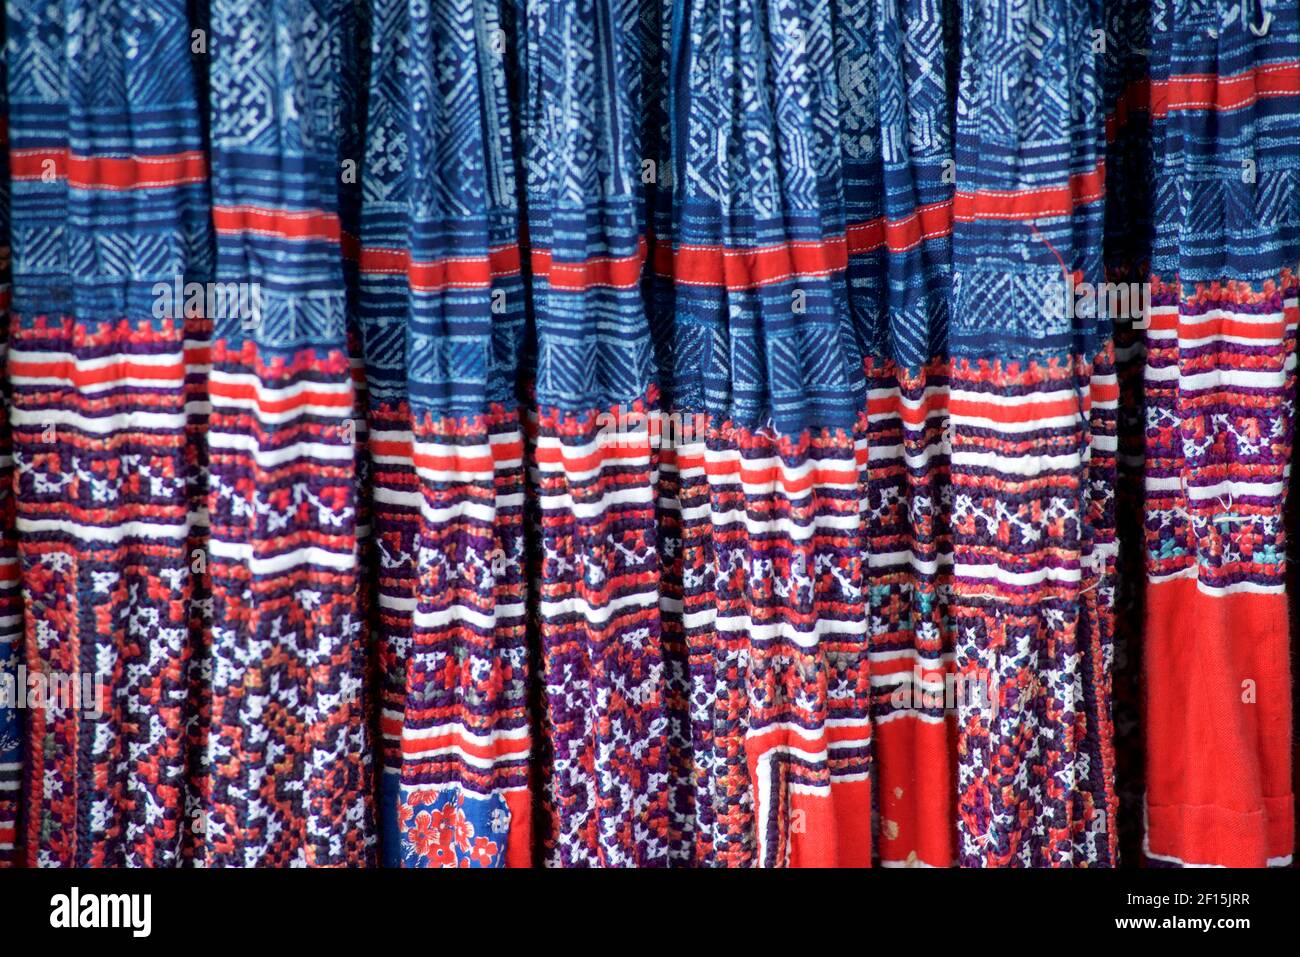 Jupe Hmong tissu : teinte indigo, applique et broderie. Sapa, Vietnam. Même partagé par les groupes Hmong en Thaïlande Banque D'Images